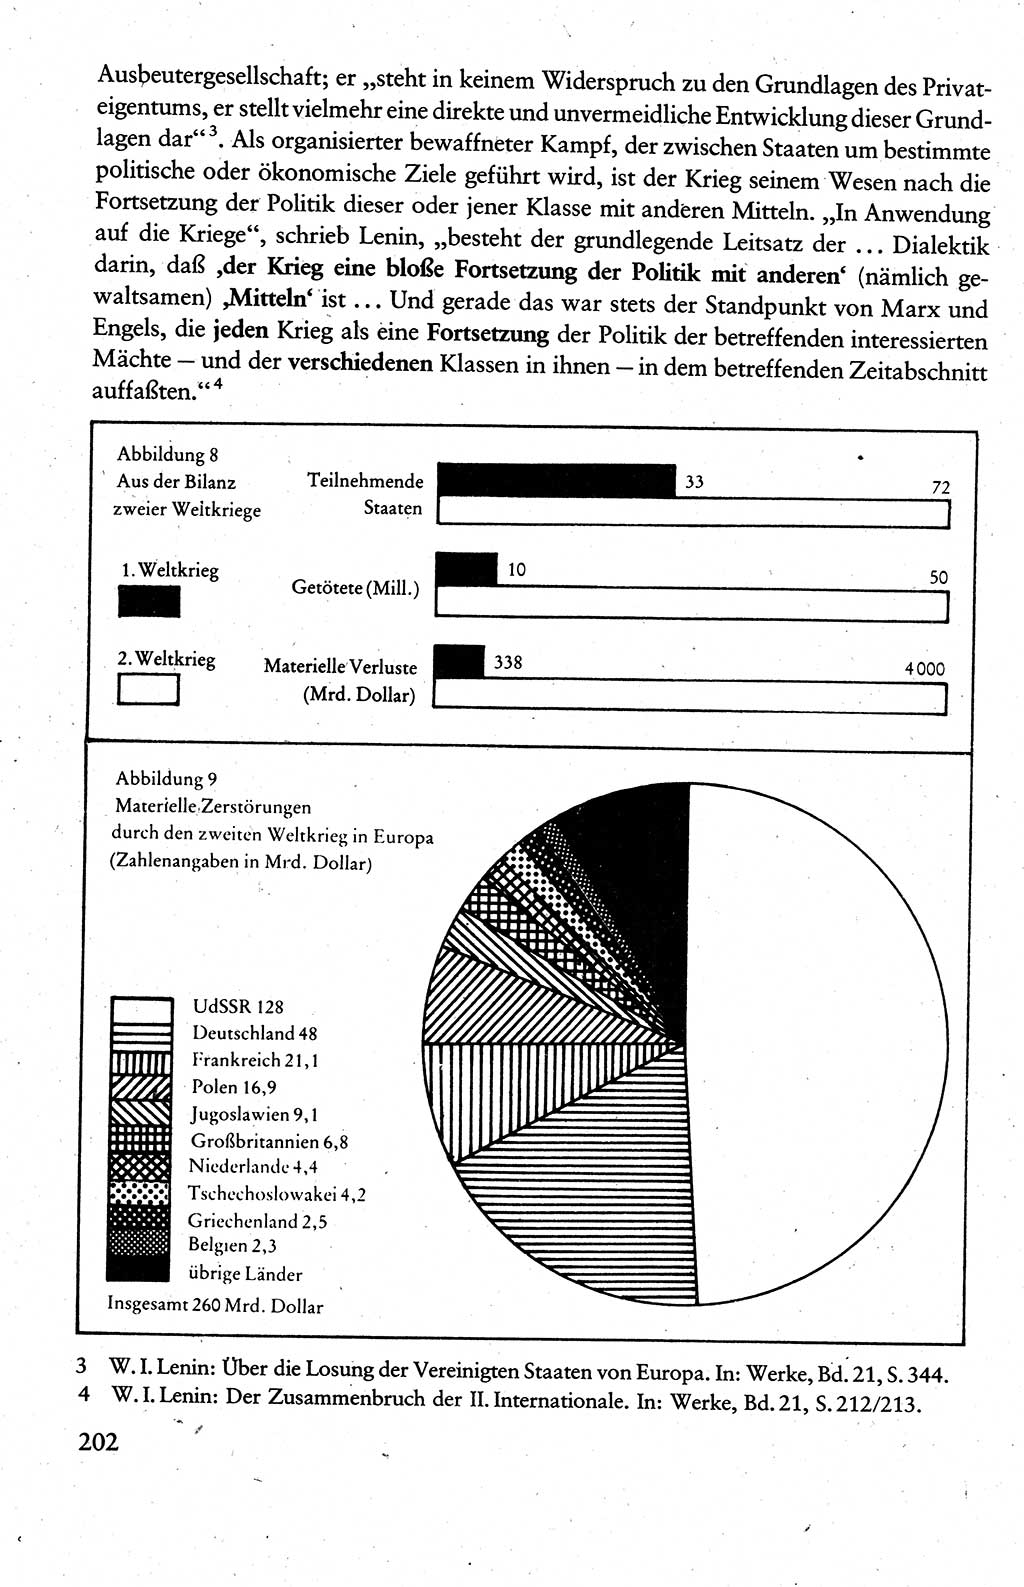 Wissenschaftlicher Kommunismus [Deutsche Demokratische Republik (DDR)], Lehrbuch für das marxistisch-leninistische Grundlagenstudium 1983, Seite 202 (Wiss. Komm. DDR Lb. 1983, S. 202)